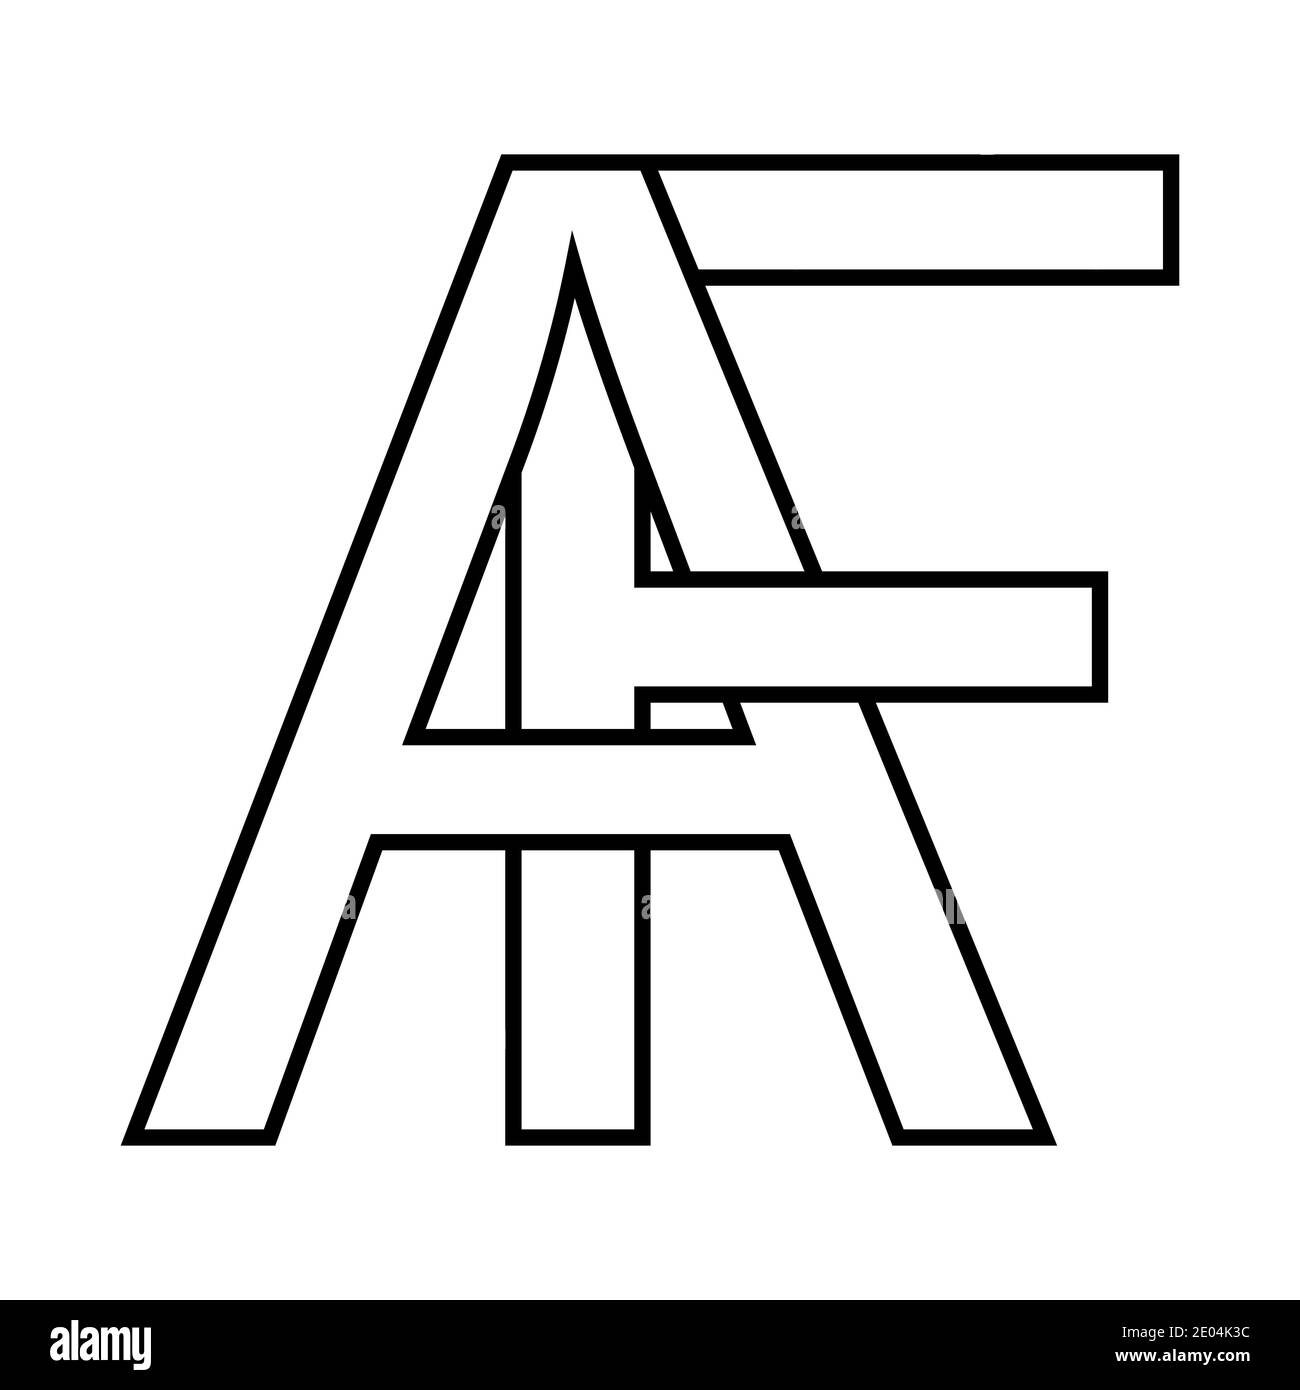 Logo icona af segno lettere interlacciate A, F logo vettoriale af prime lettere maiuscole motivo alfabeto a, f Illustrazione Vettoriale